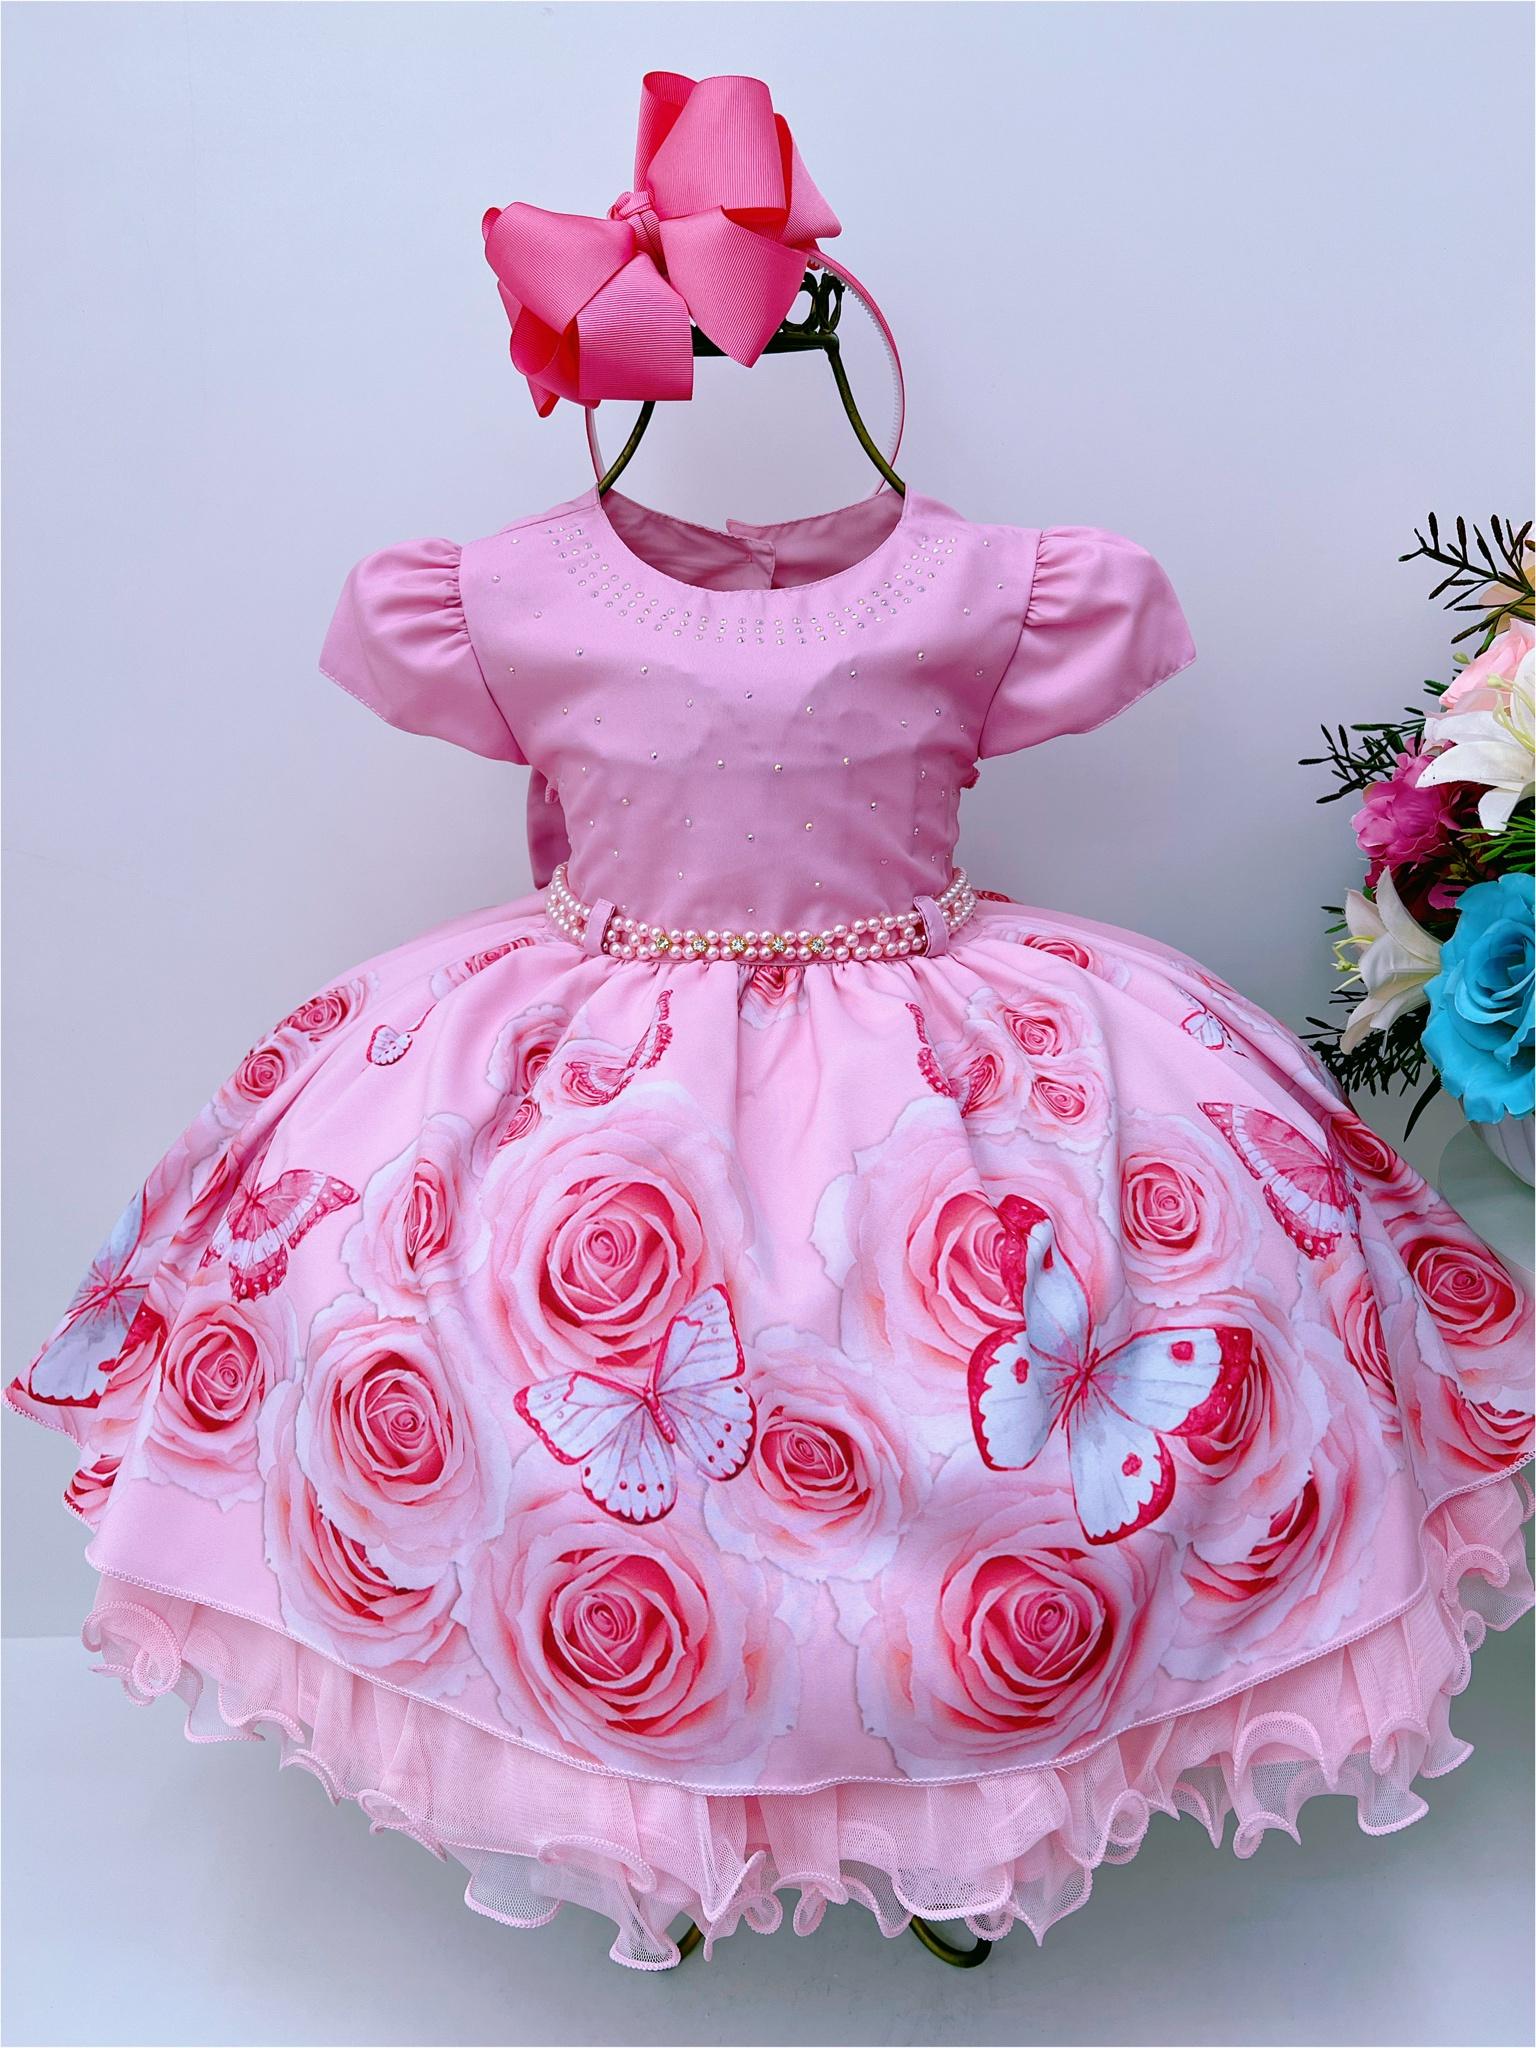 Vestido Infantil Rosa Saia Floral Cinto Pérolas e Apliques